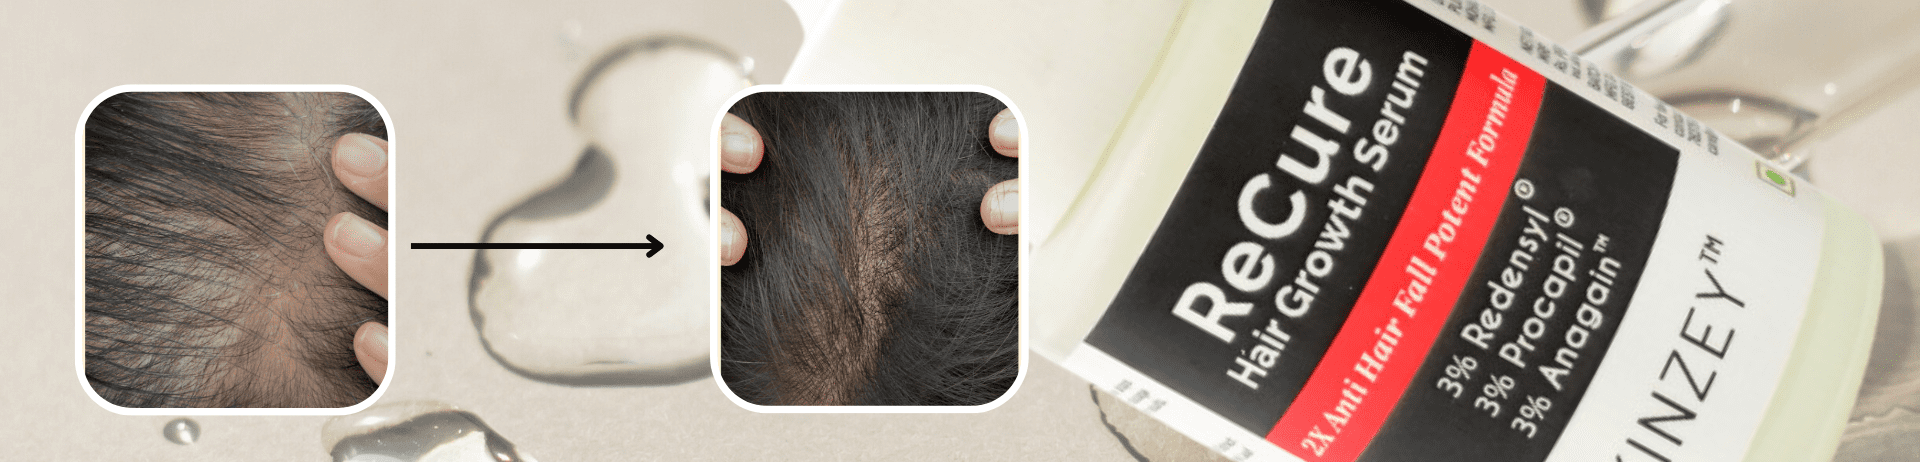 12 week hair regrowth serum